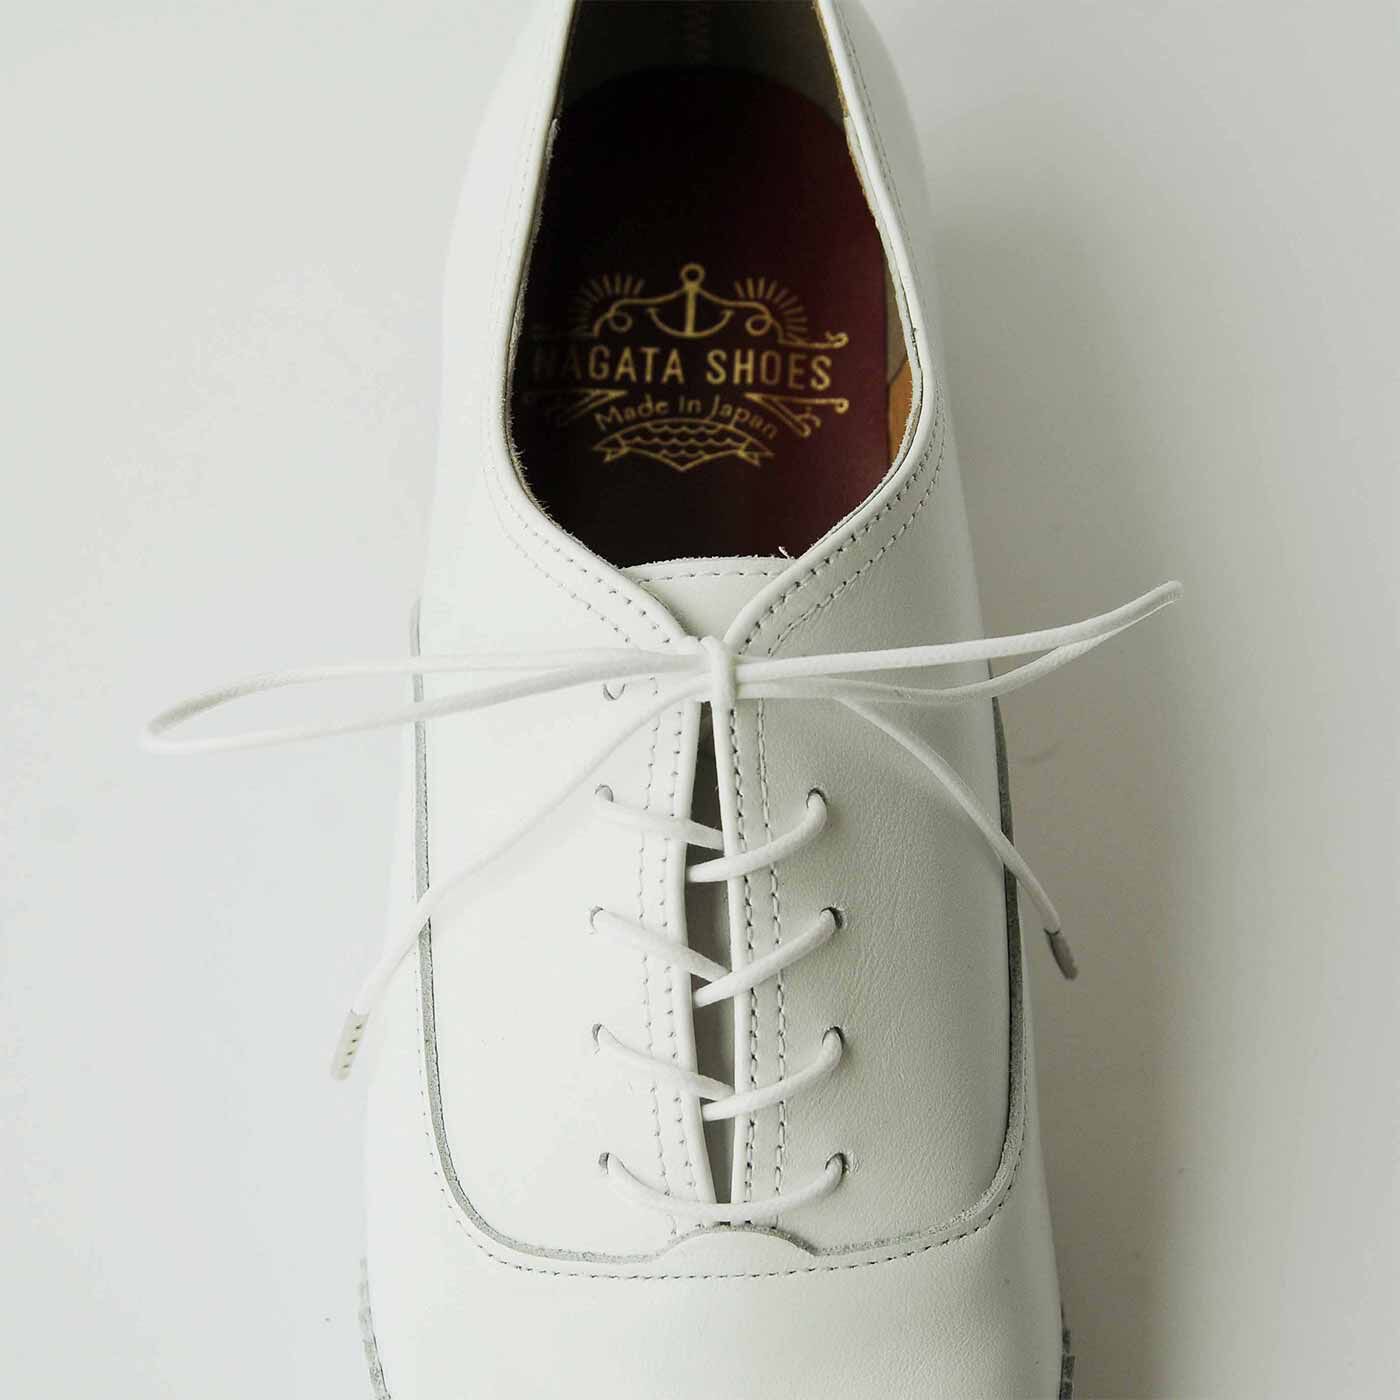 ＆Stories|長田の靴メーカーと作った 職人本革のレースアップシューズ〈ホワイト〉|細身に見えて、実は幅広・甲高の足もすっぽり包み、フィットします。